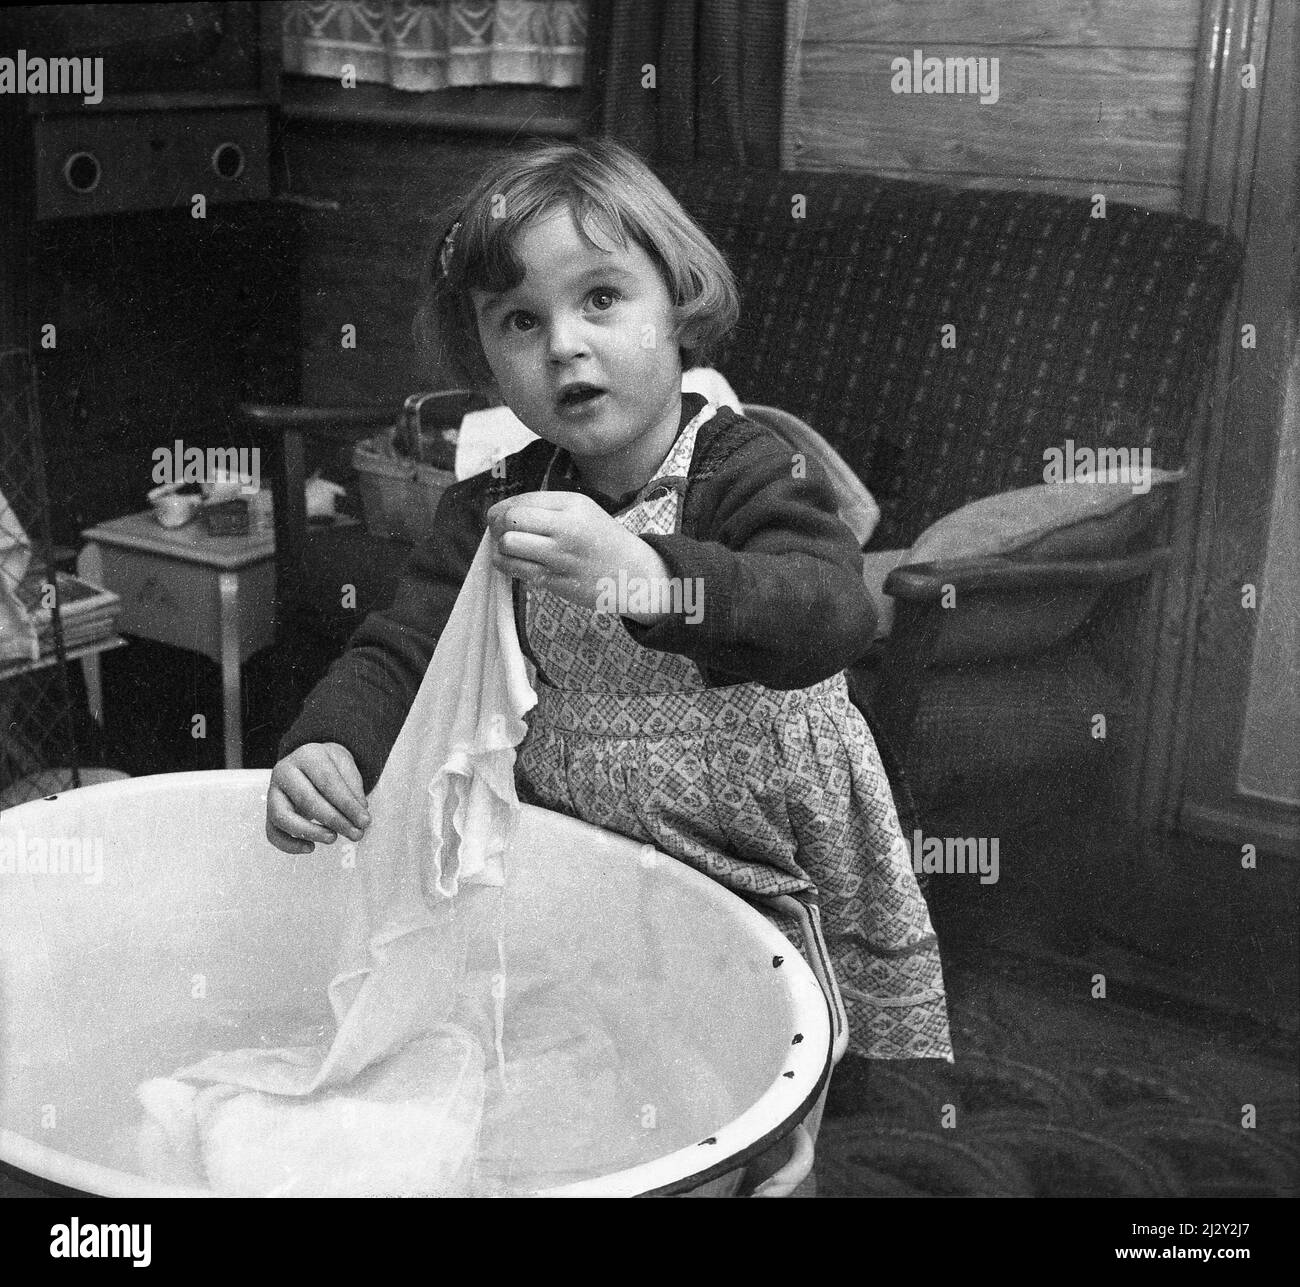 1961, hisotrical, in piedi in una stanza anteriore, bambina che tiene su un capo di vestiario che è stato lavato in un bacino o ciotola di smalto, Stockport, Manchester, Inghilterra, Regno Unito. Foto Stock